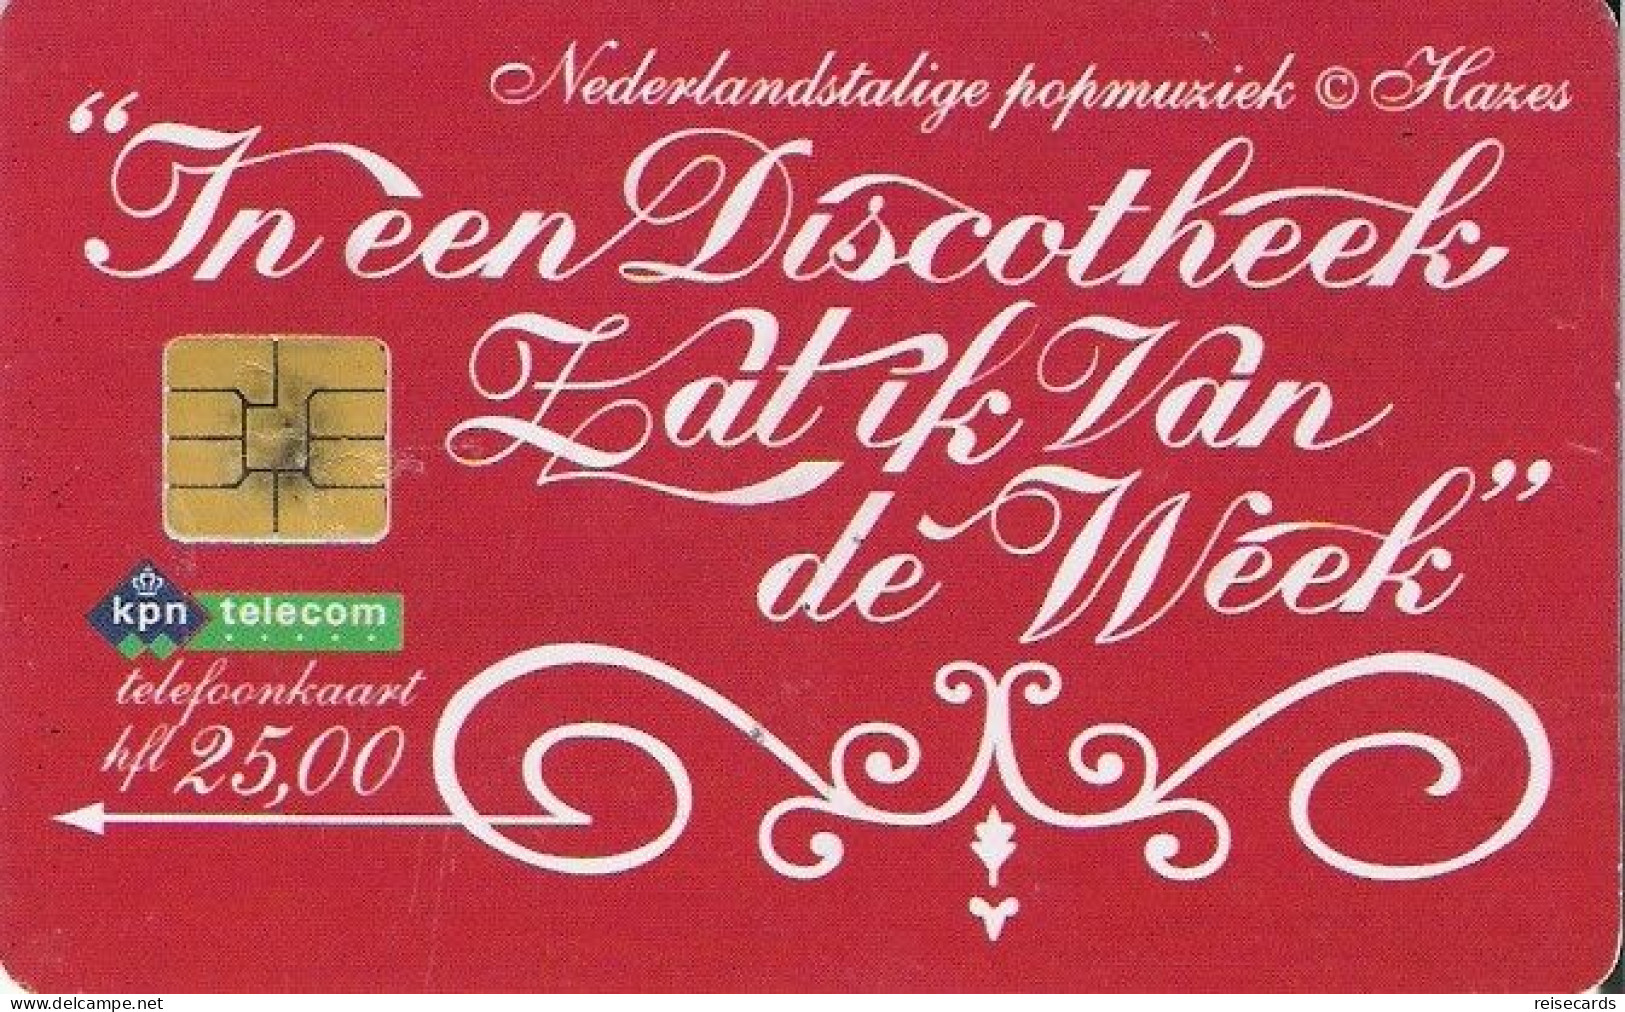 Netherlands: Kpn Telecom - 1999 In Een Discotheek - öffentlich